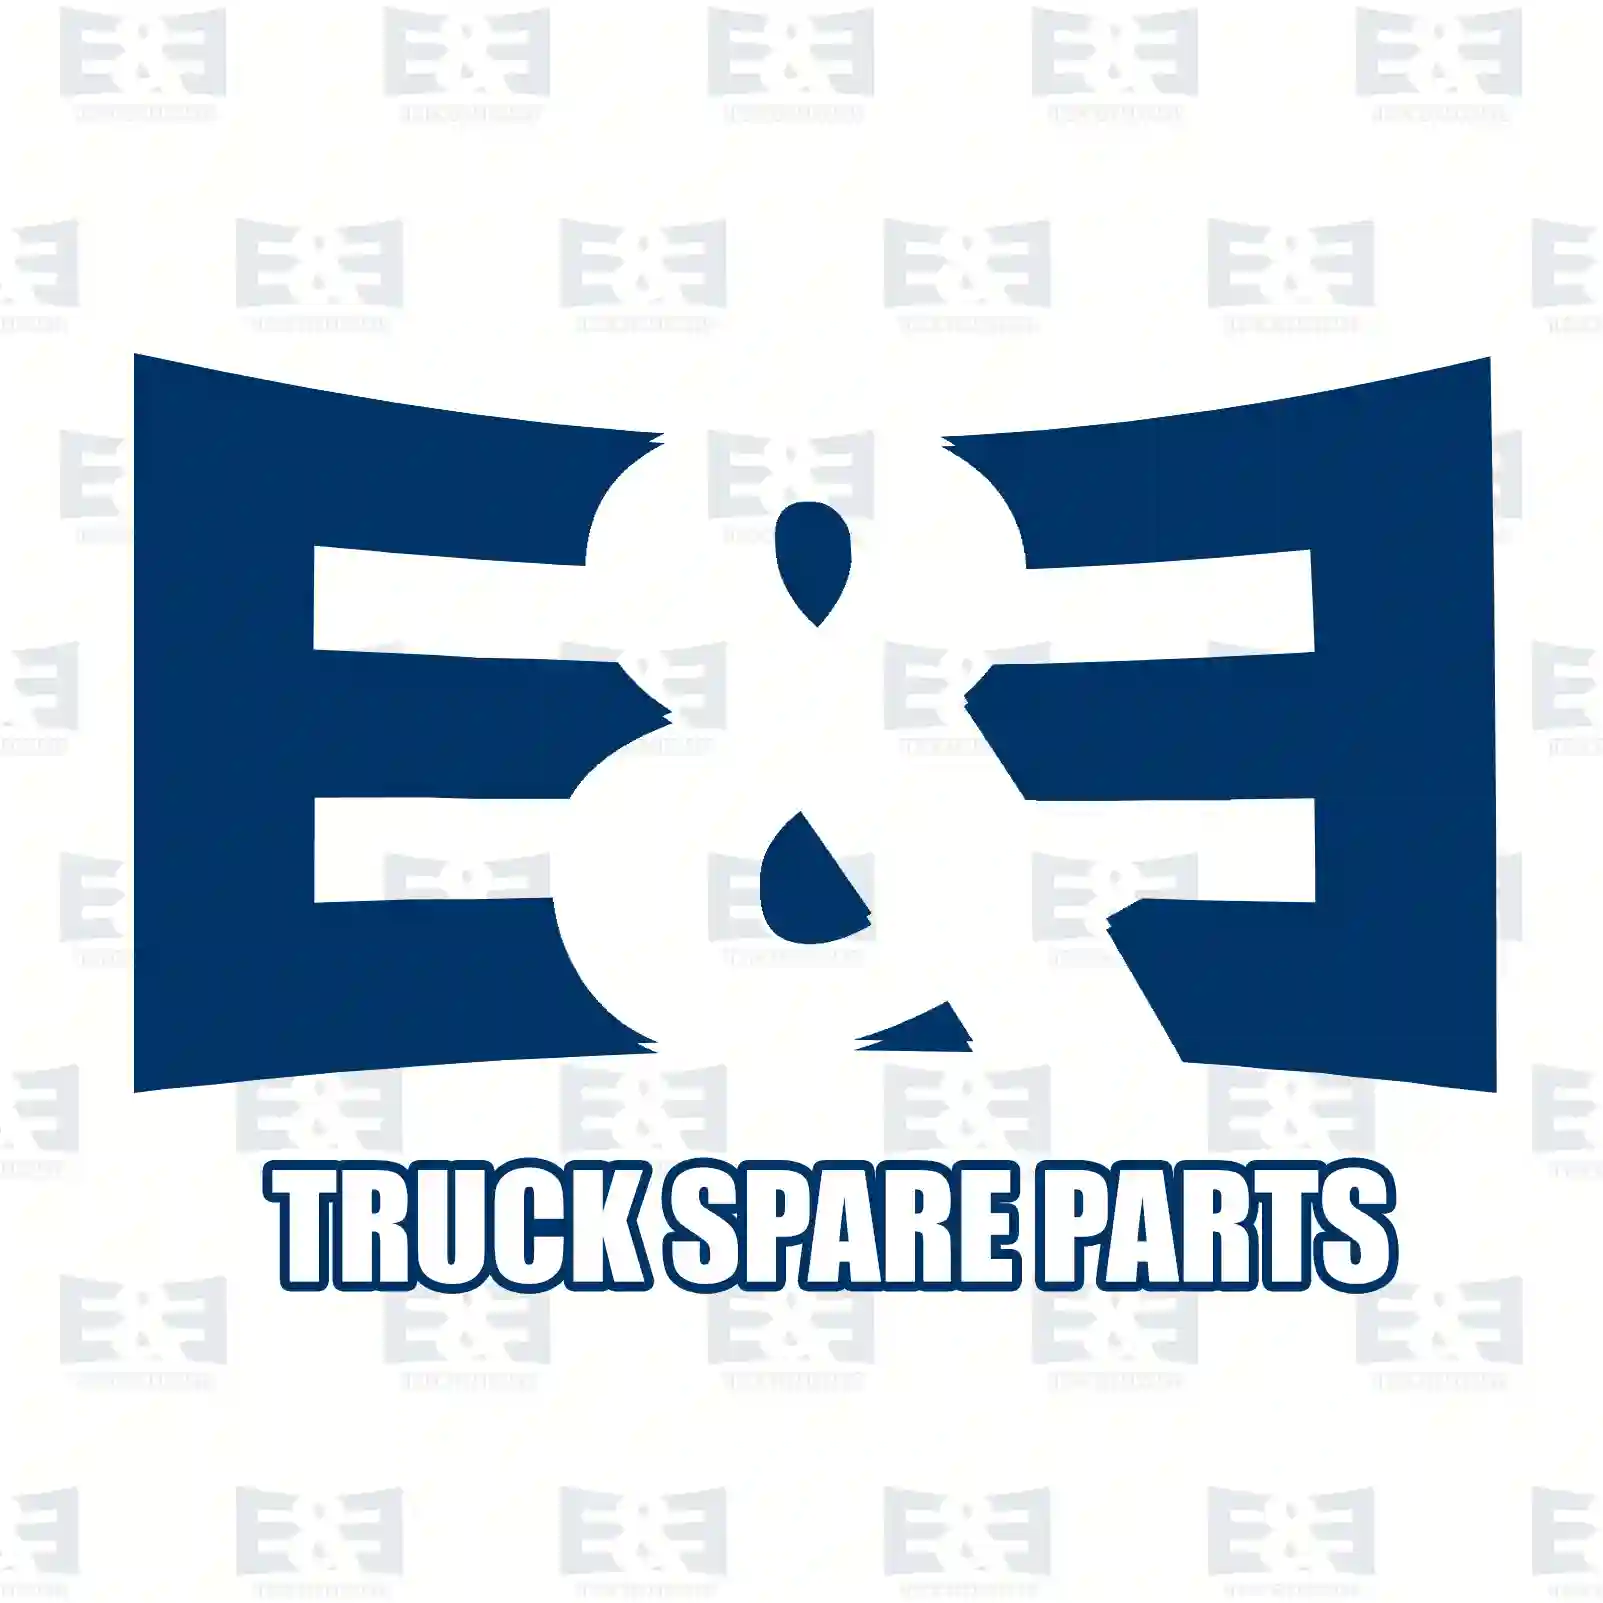 Cabin tilt cylinder, 2E2275674, 7422070293, 7422302638, 7422928436, , , , ||  2E2275674 E&E Truck Spare Parts | Truck Spare Parts, Auotomotive Spare Parts Cabin tilt cylinder, 2E2275674, 7422070293, 7422302638, 7422928436, , , , ||  2E2275674 E&E Truck Spare Parts | Truck Spare Parts, Auotomotive Spare Parts